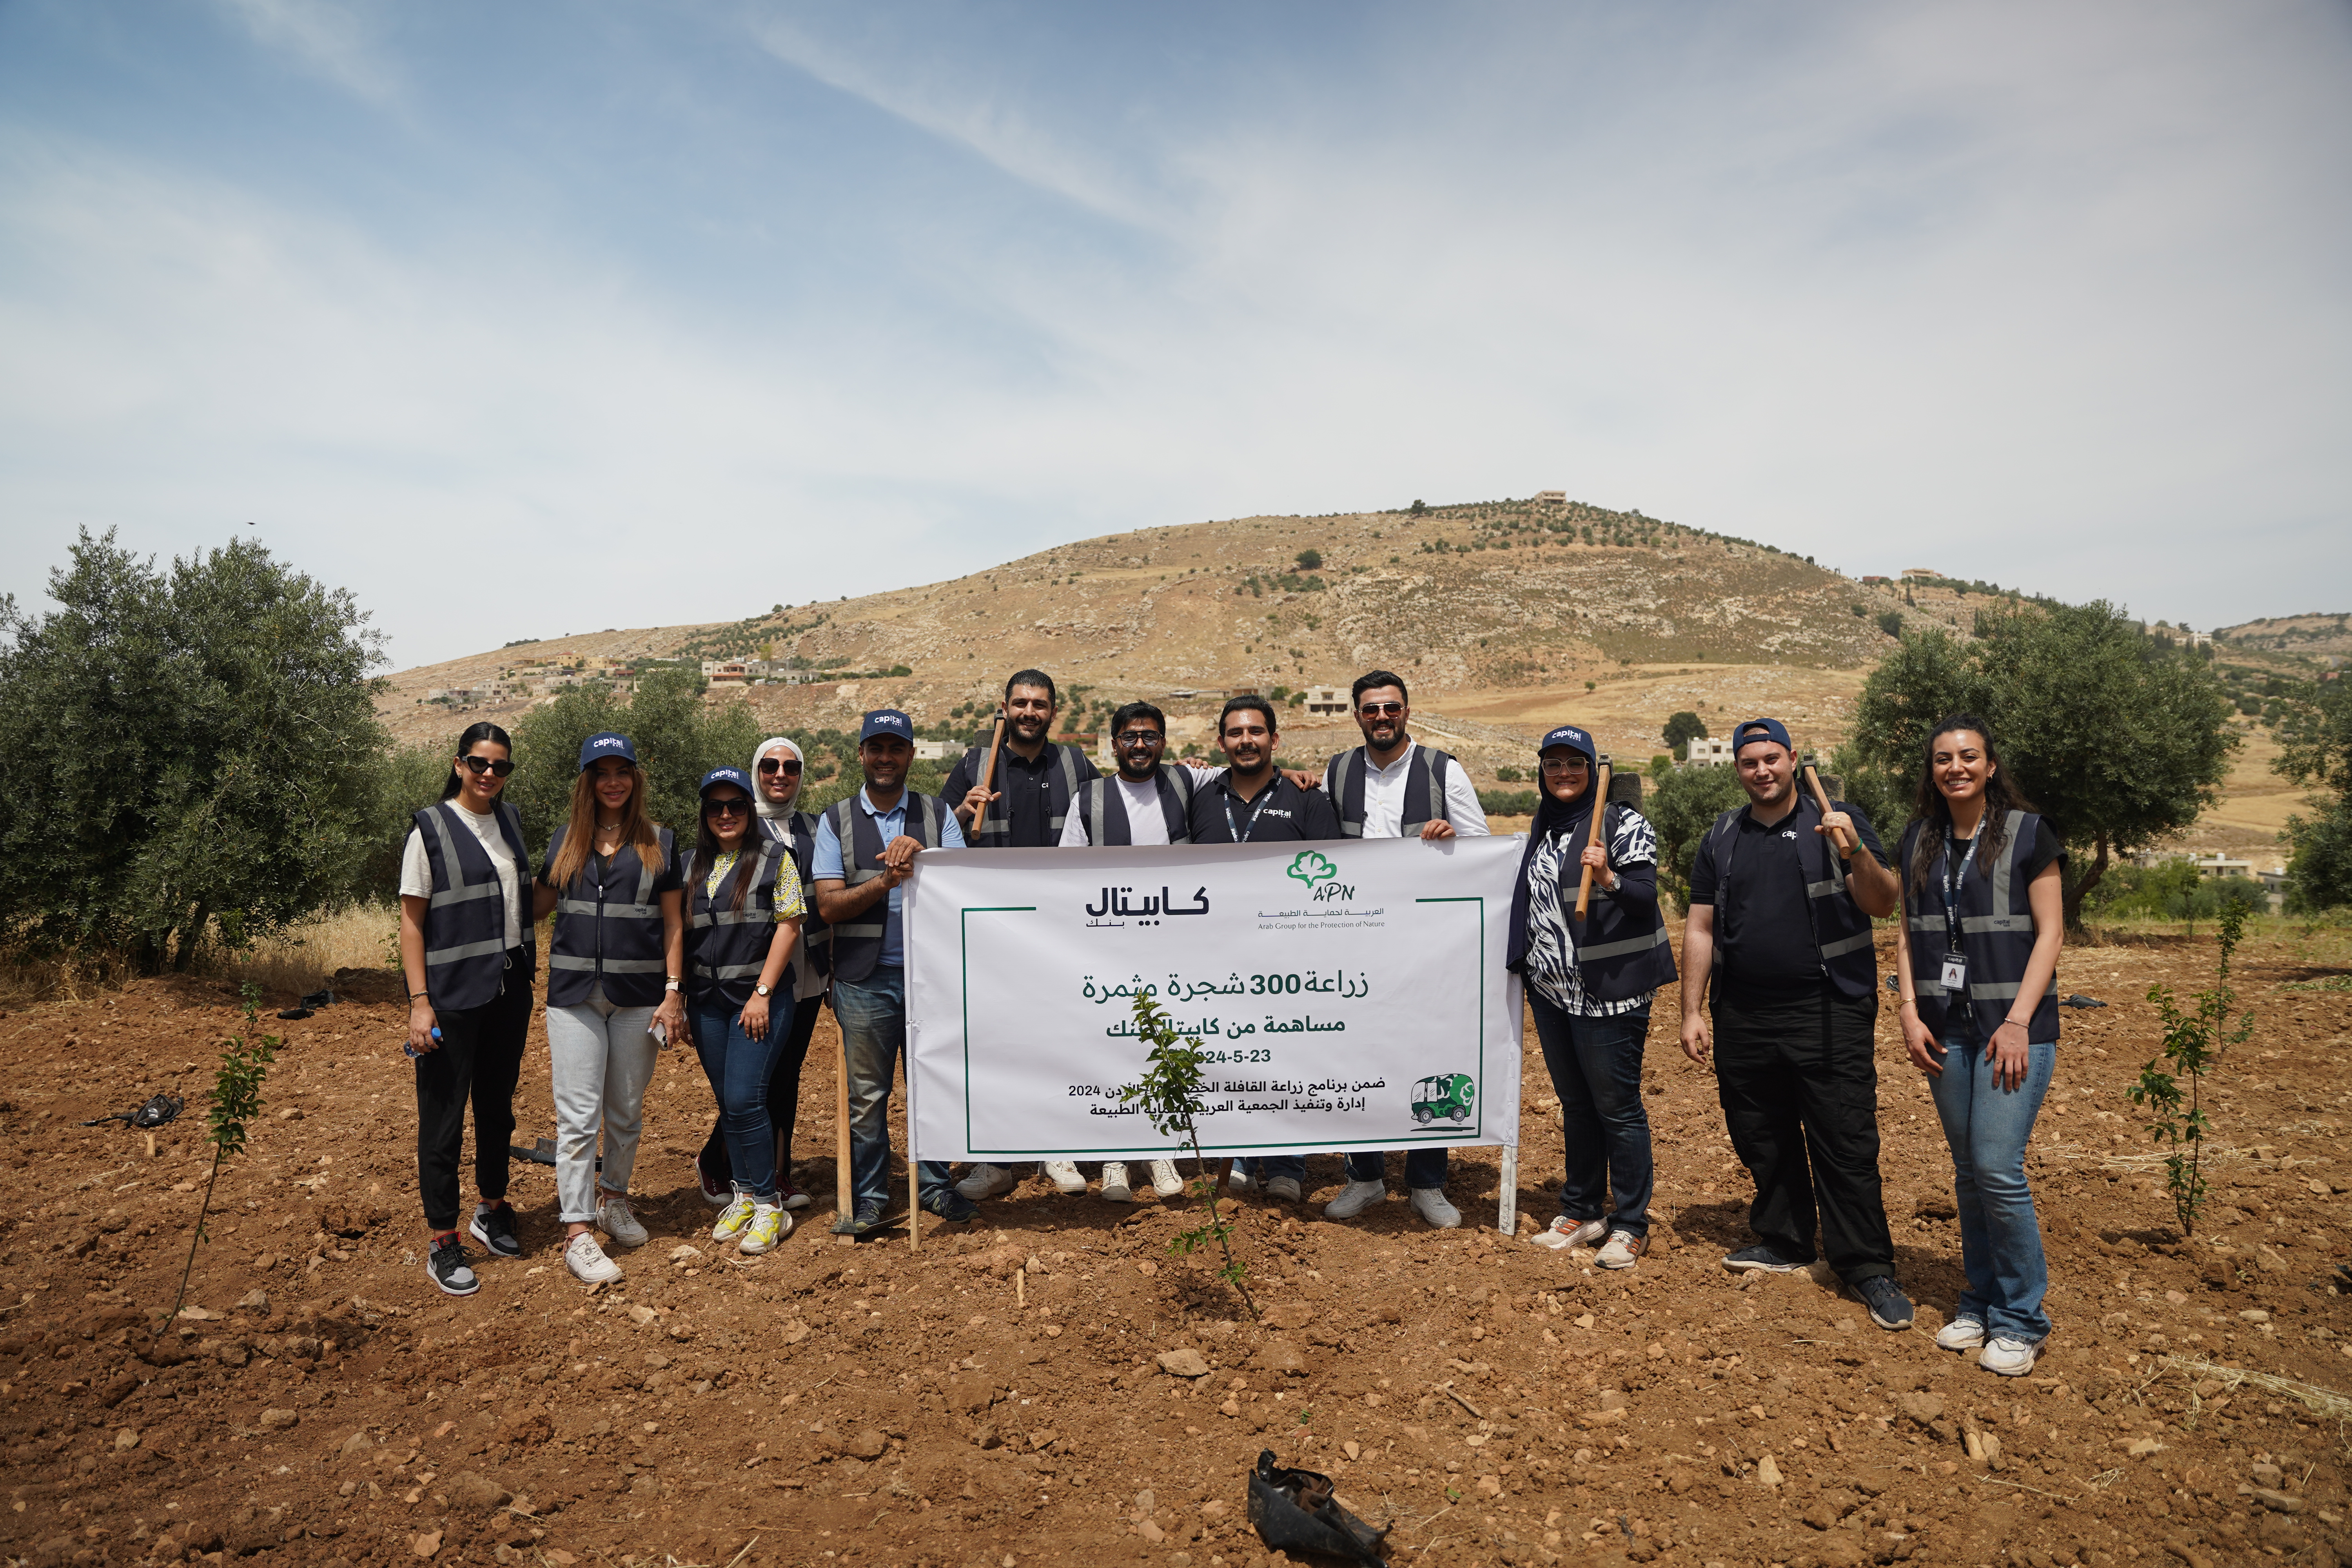 موظفو كابيتال بنك يشاركون في مبادرة لزراعة الأشجار بالتعاون مع الجمعية العربية لحماية الطبيعة